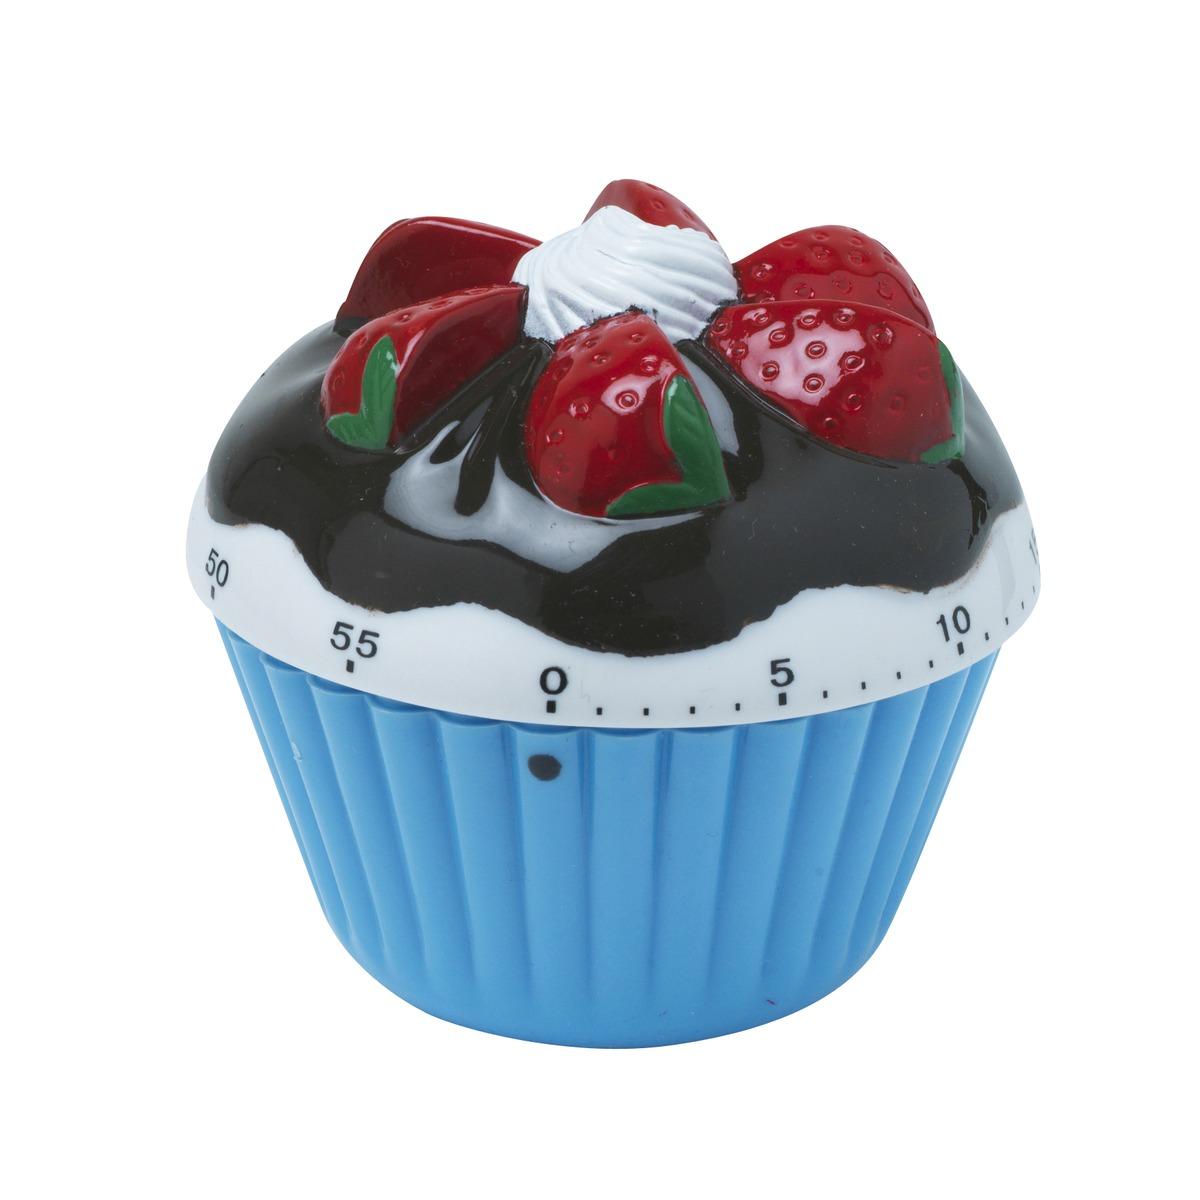 Minuteur cupcake - Diamètre 8 cm x H 7 cm - Différents coloris